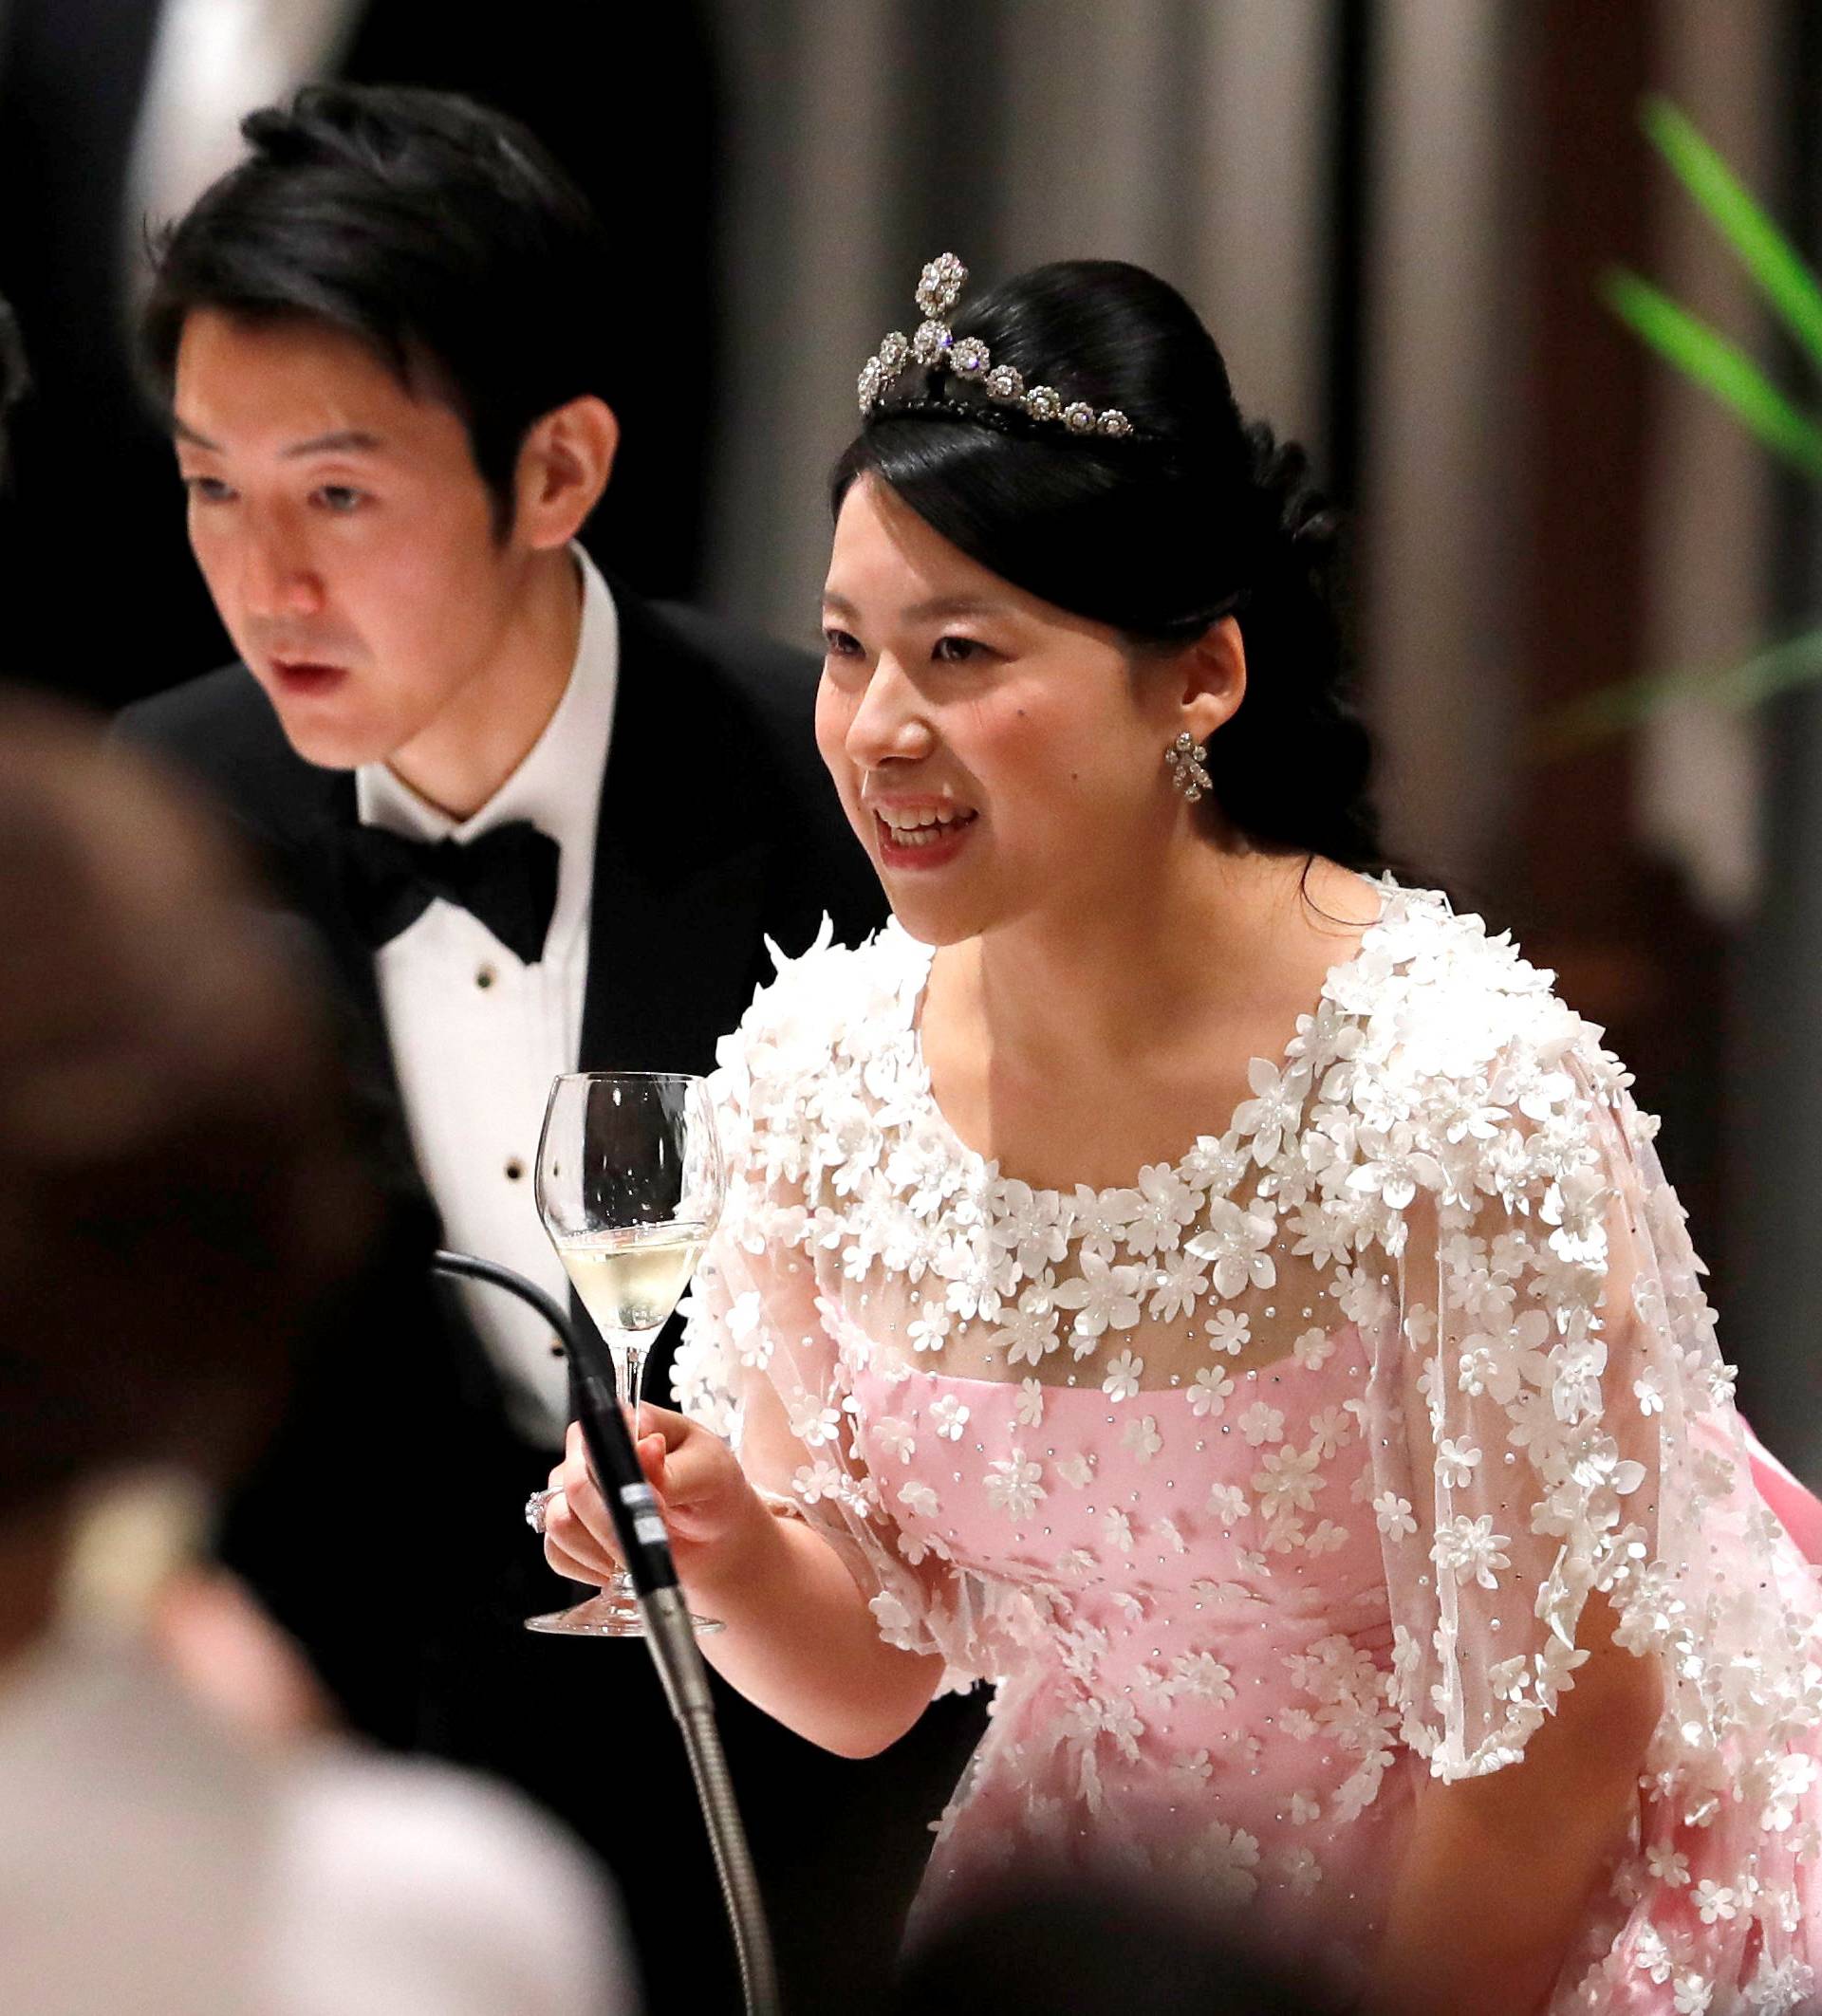 Japan's former princess Ayako Moriya and her husband Kei Moriya toast with Crown Prince Naruhito at their wedding banquet in Tokyo